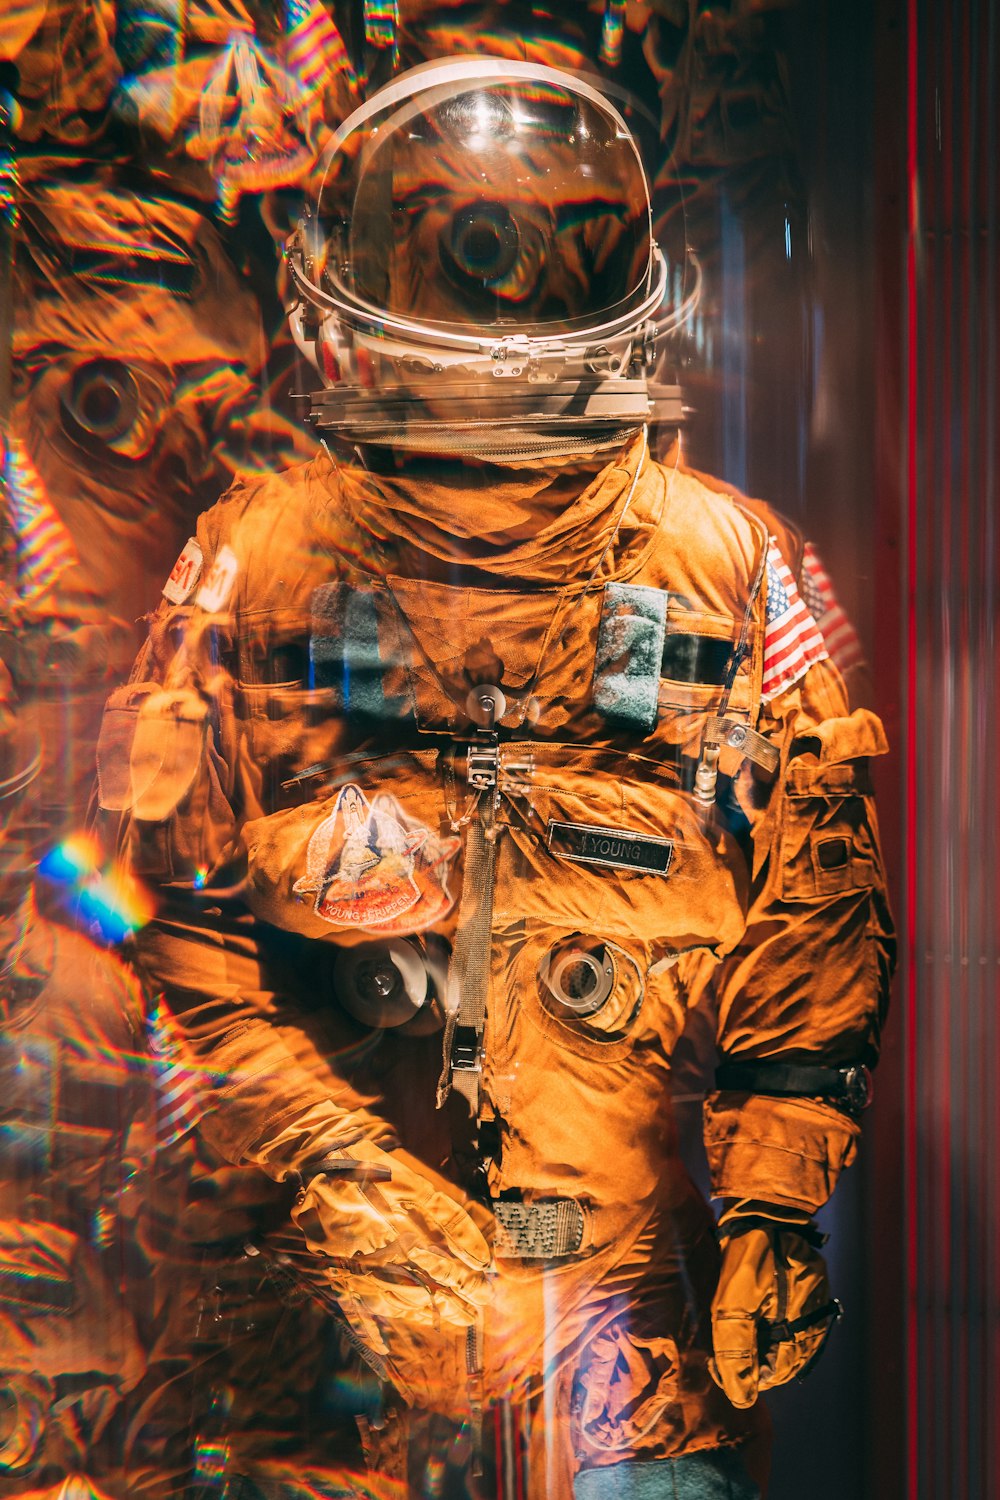 창문 앞에 서 있는 주황색 우주복을 입은 남자